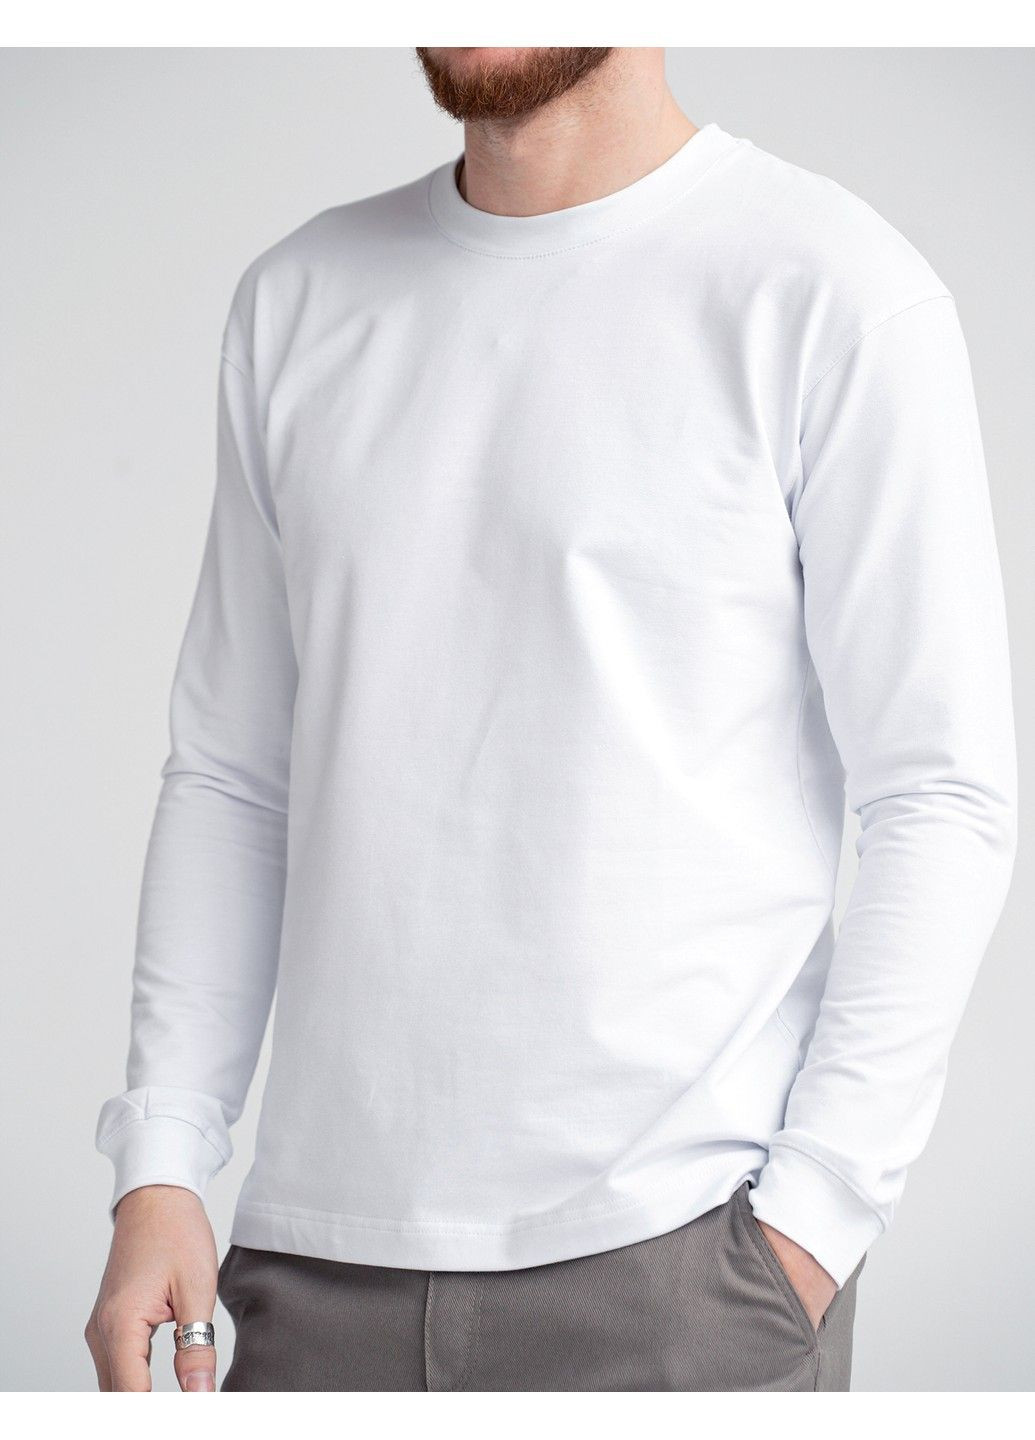 Белая мужская футболка с длинным рукавом long sleeve белый Teamv